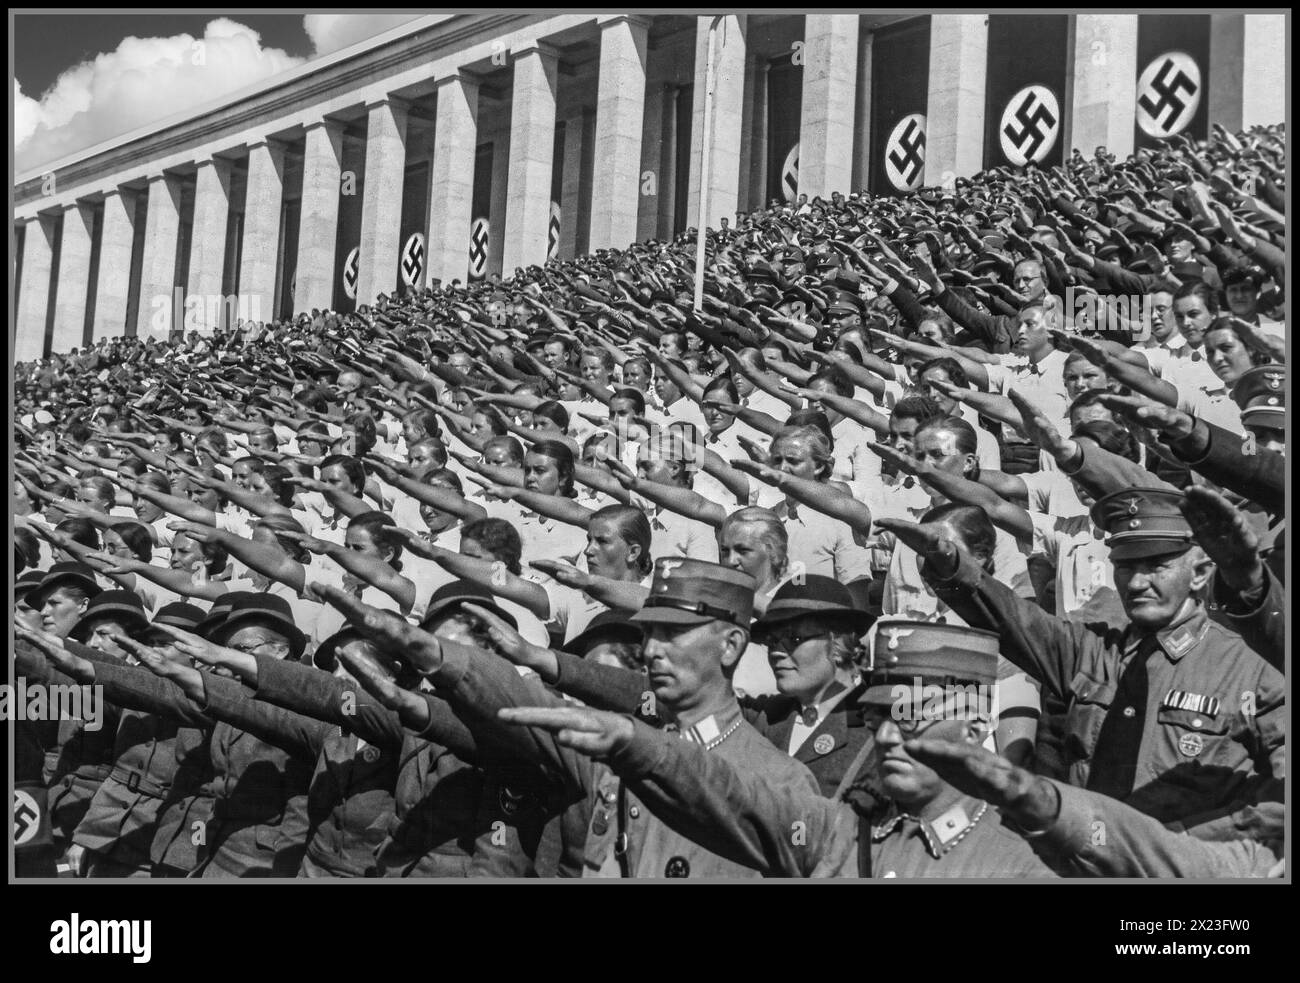 1930 Nuremberg rassemblement de l'Allemagne nazie, avec des participants dont des membres de l'armée paramilitaire le Sturmbleitung et des filles du BDM. BUND DEUTSCHER MADEL., l'aile des jeunes filles du parti nazi. Tous donnent à Adolf Hitler le salut nazi Heil Hitler. Nuremberg Nurnberg Allemagne nazie Banque D'Images